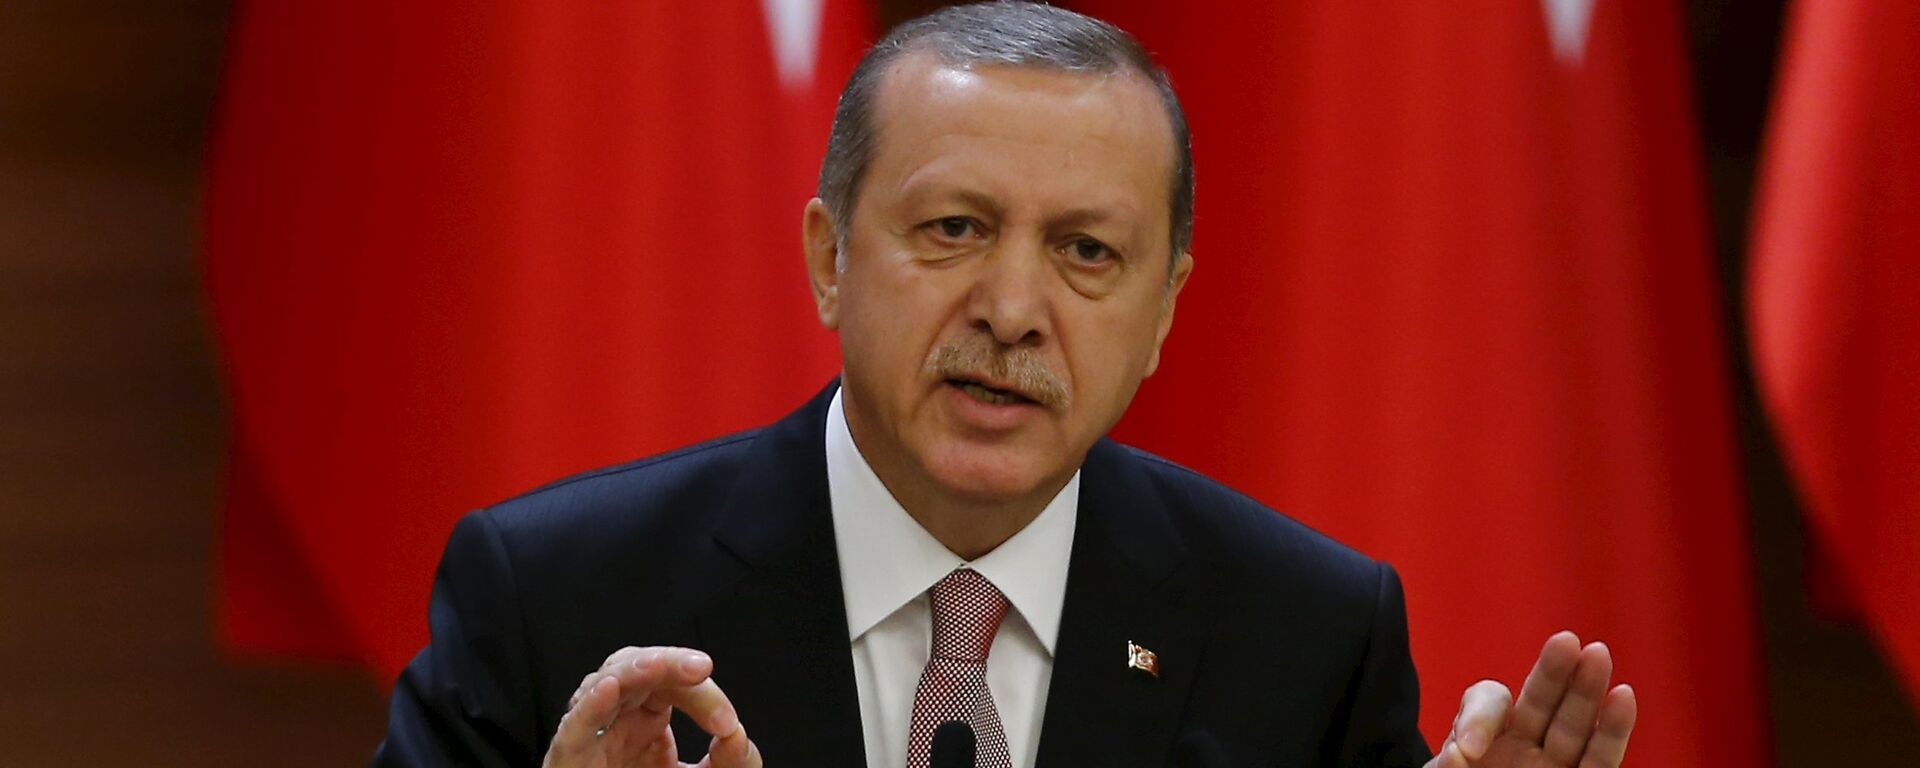 Recep Tayyip Erdogan, presidente de Turquía - Sputnik Mundo, 1920, 11.04.2021